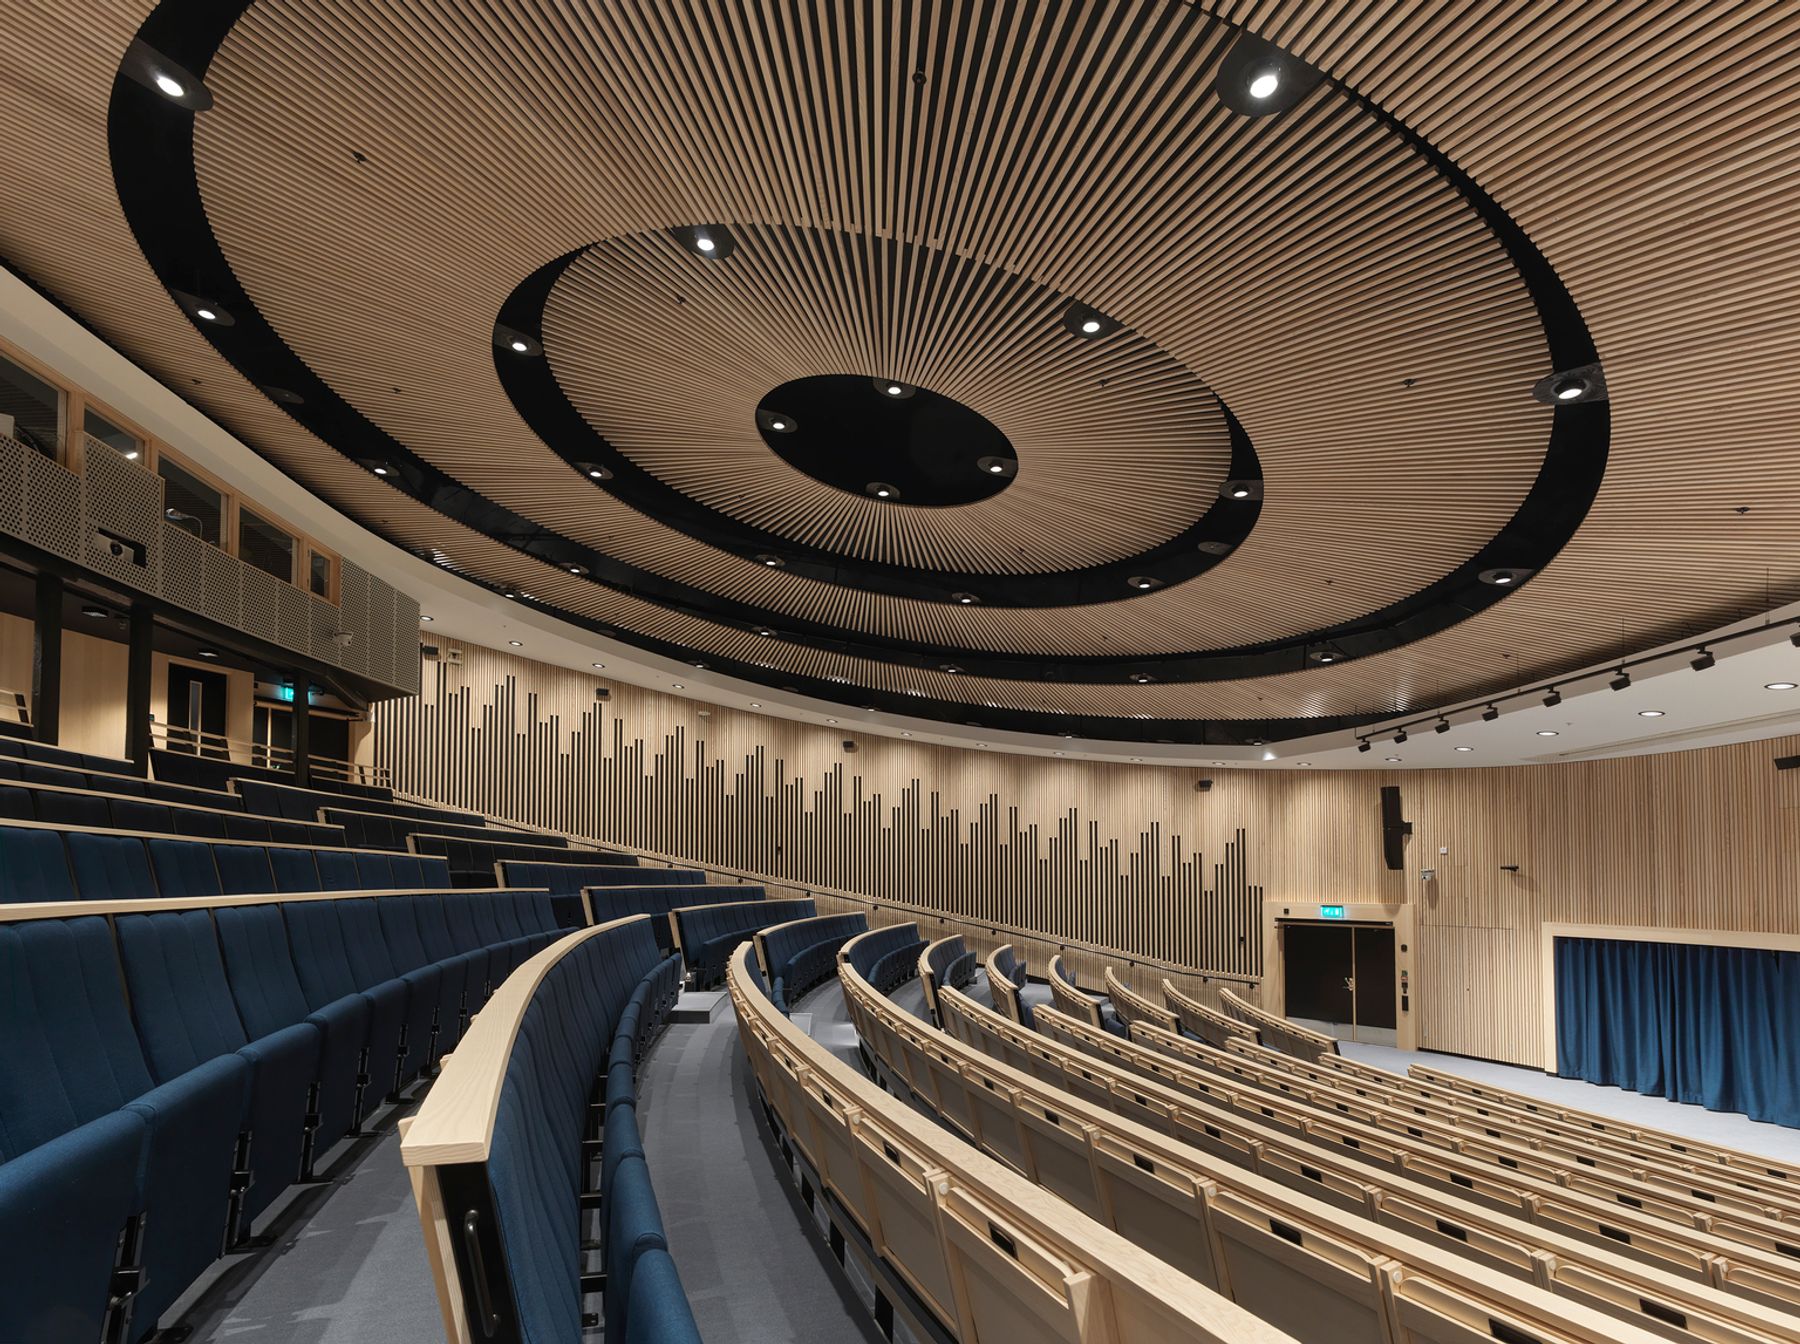 Auditorium, Lund. Arkitektur: ZOOM Arkitekter i Lund. Ljusplanering: Stefan Malm, Sweco, Malmö. Foto: Erik Wik, Kyrkotorp.